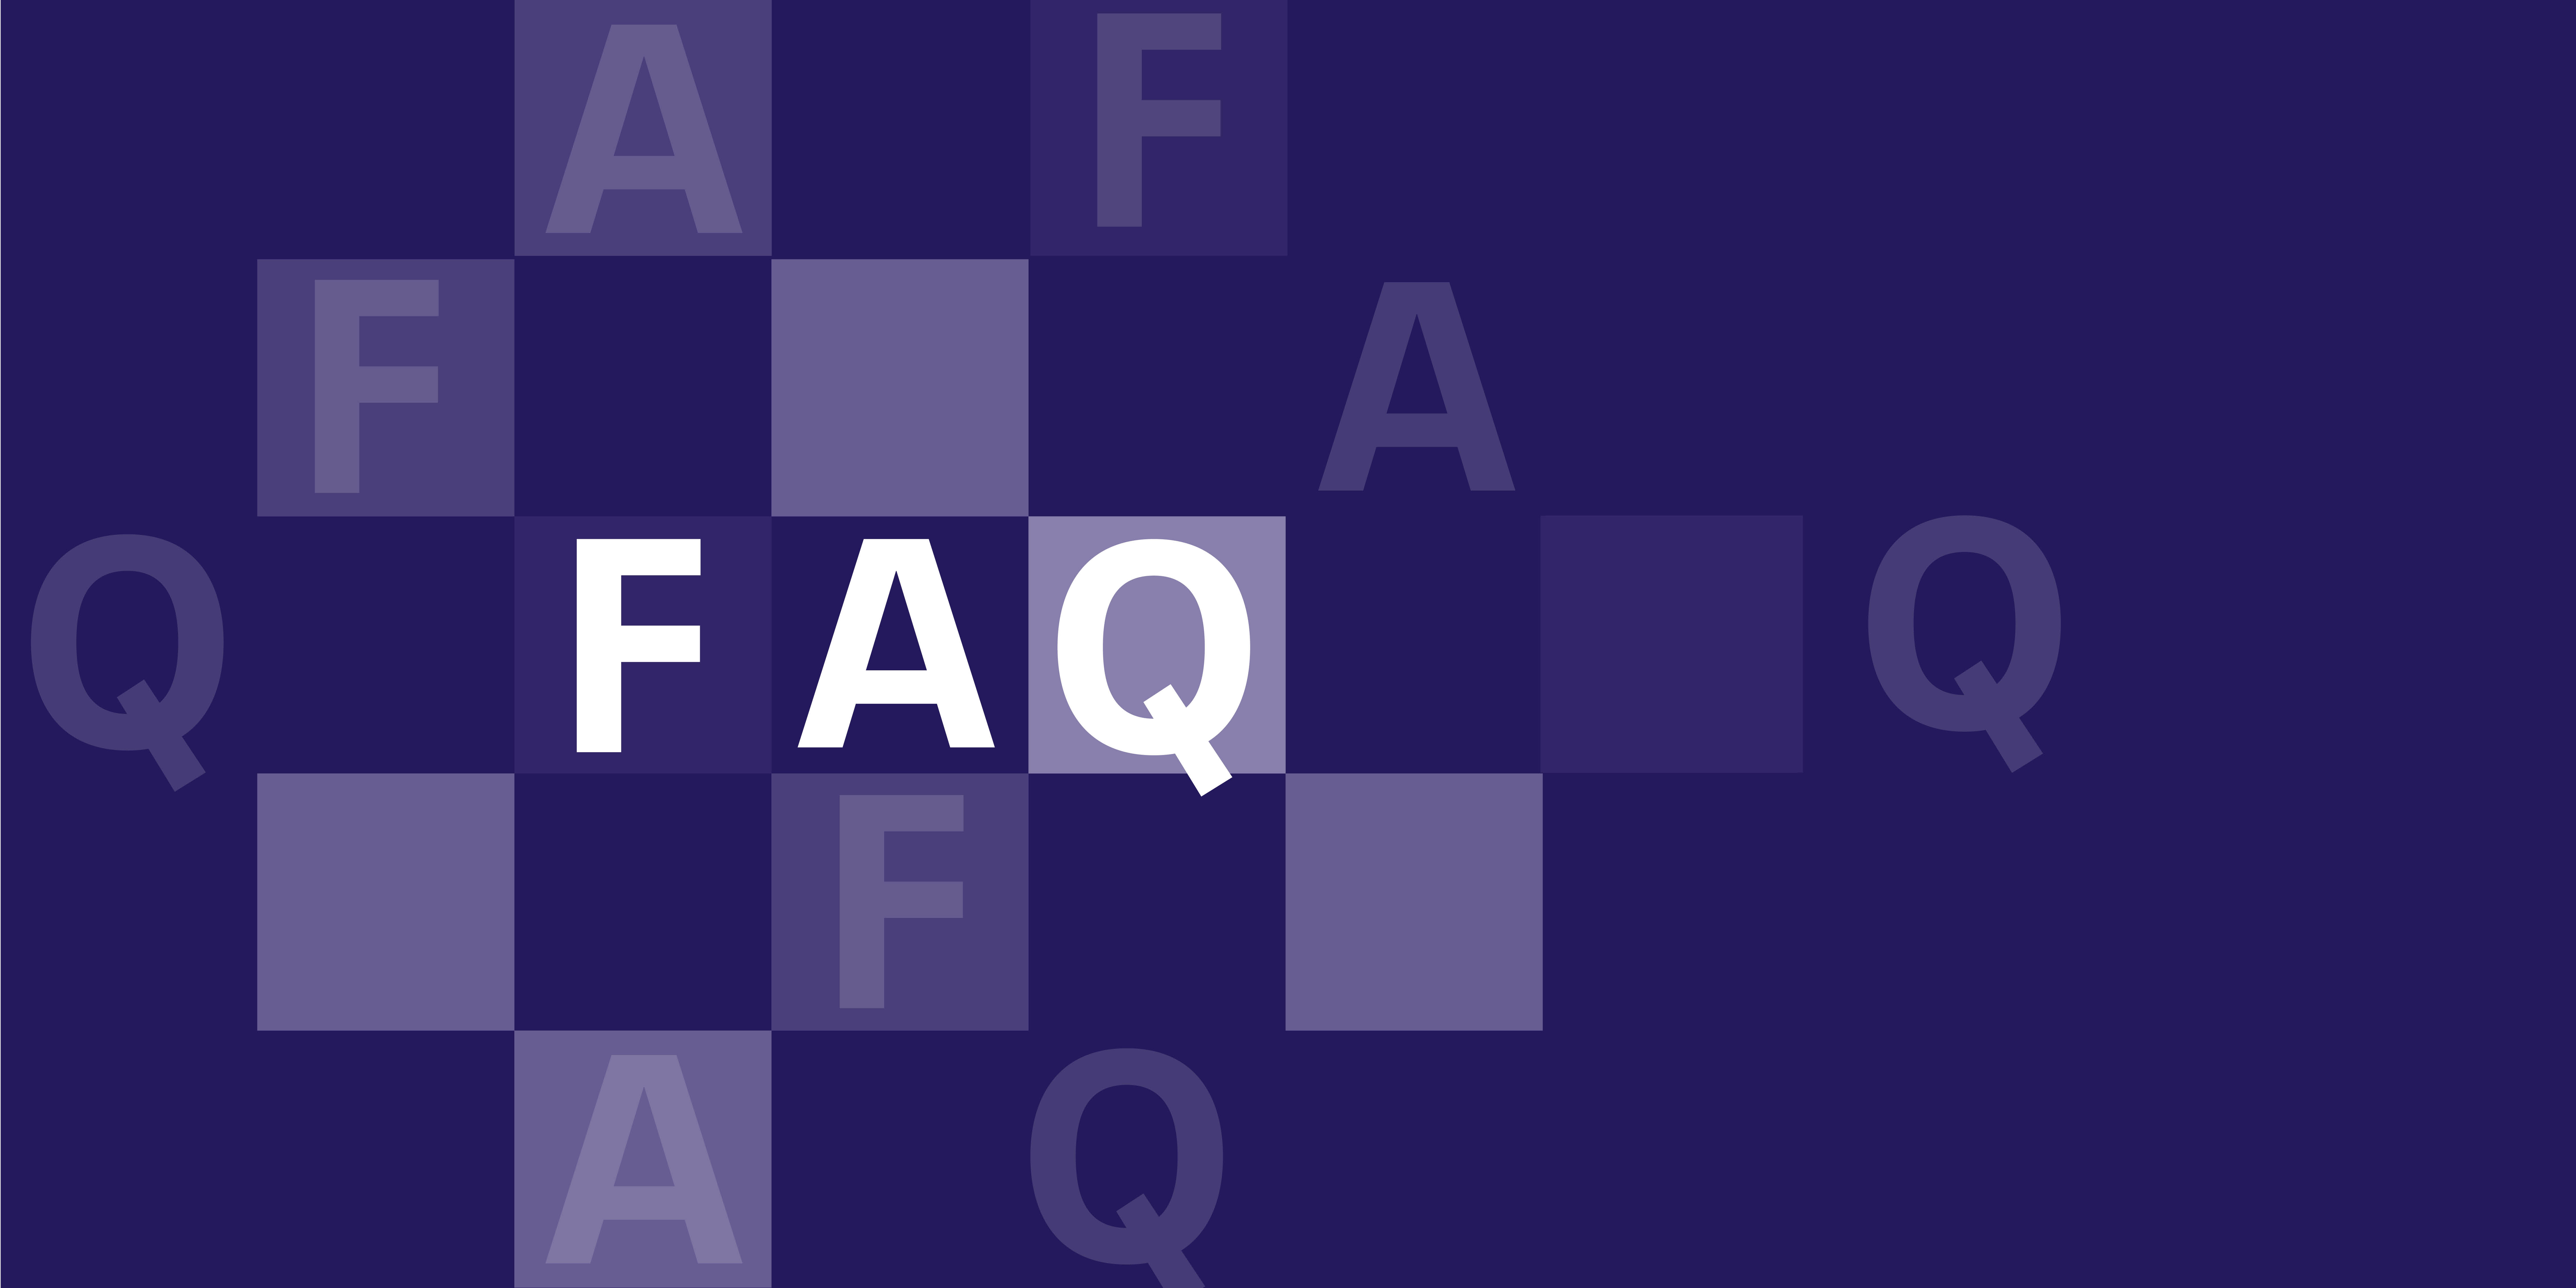 Die Buchstaben F A Q auf lila Hintergrund.